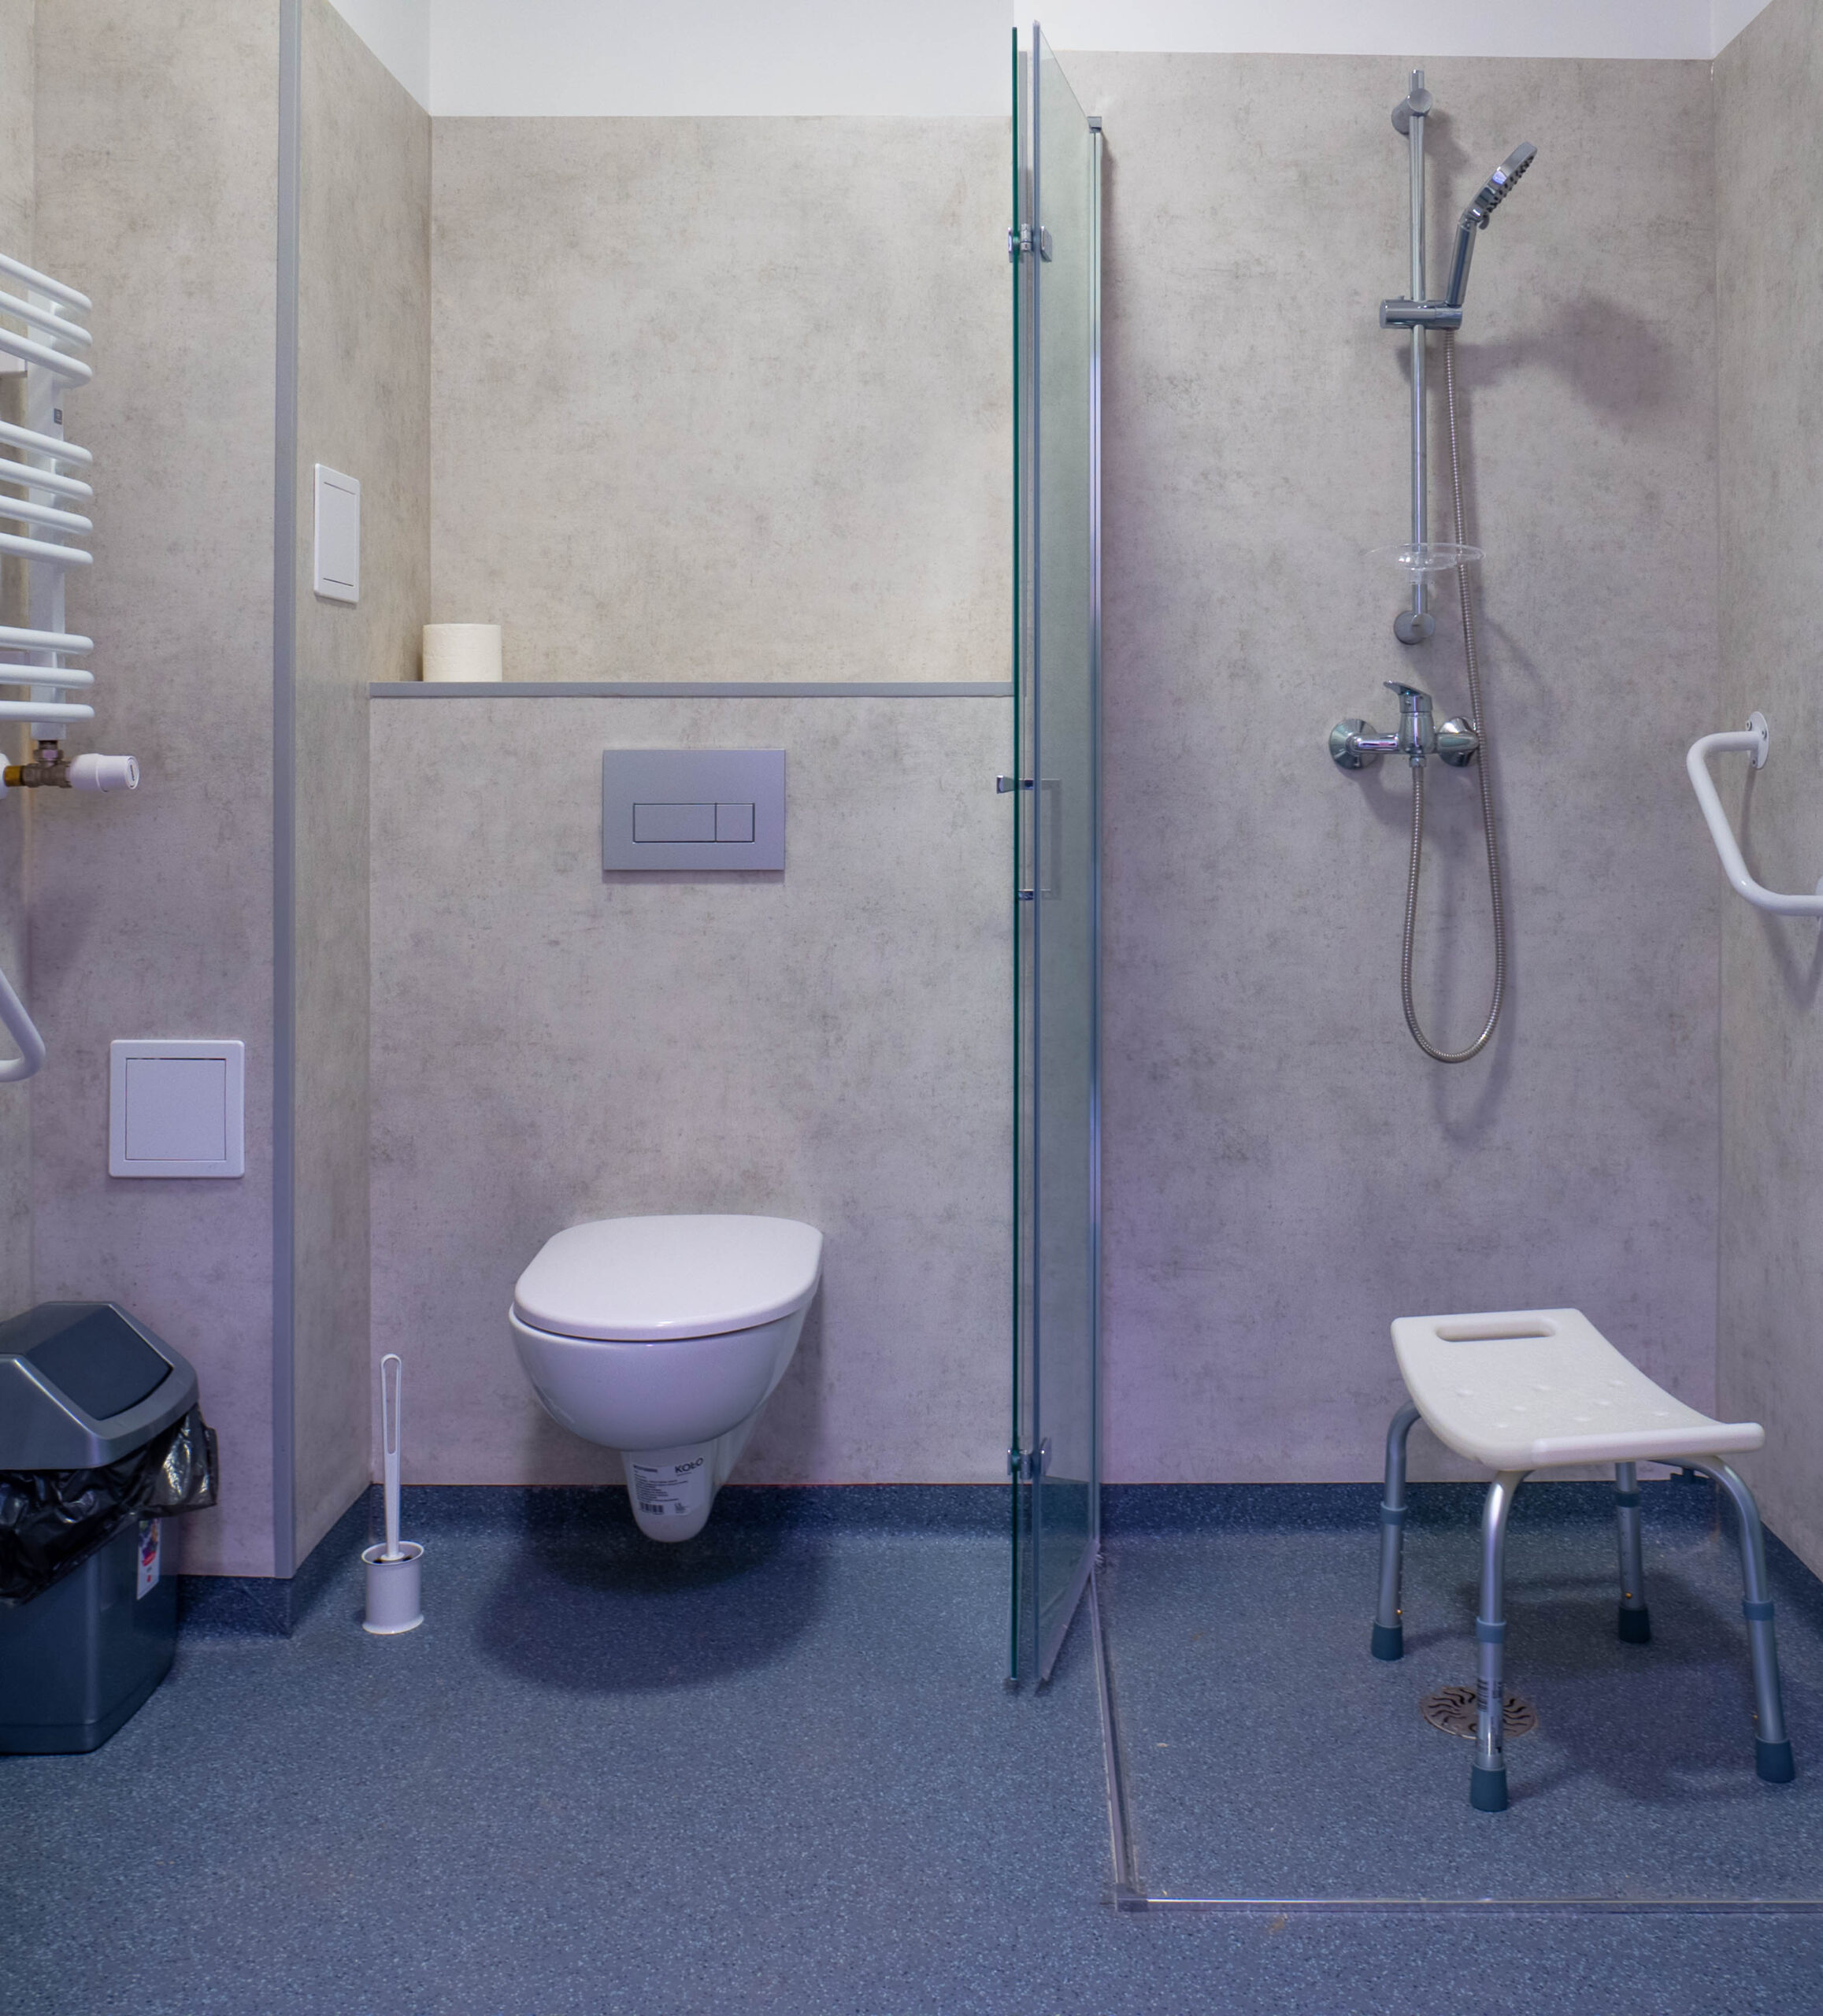 Zdjęcie łazienki w Warszawskim Domu Seniora. Na zdjęciu widać sedes, prysznic i specjalną ławeczkę ułatwiającą kąpiel.